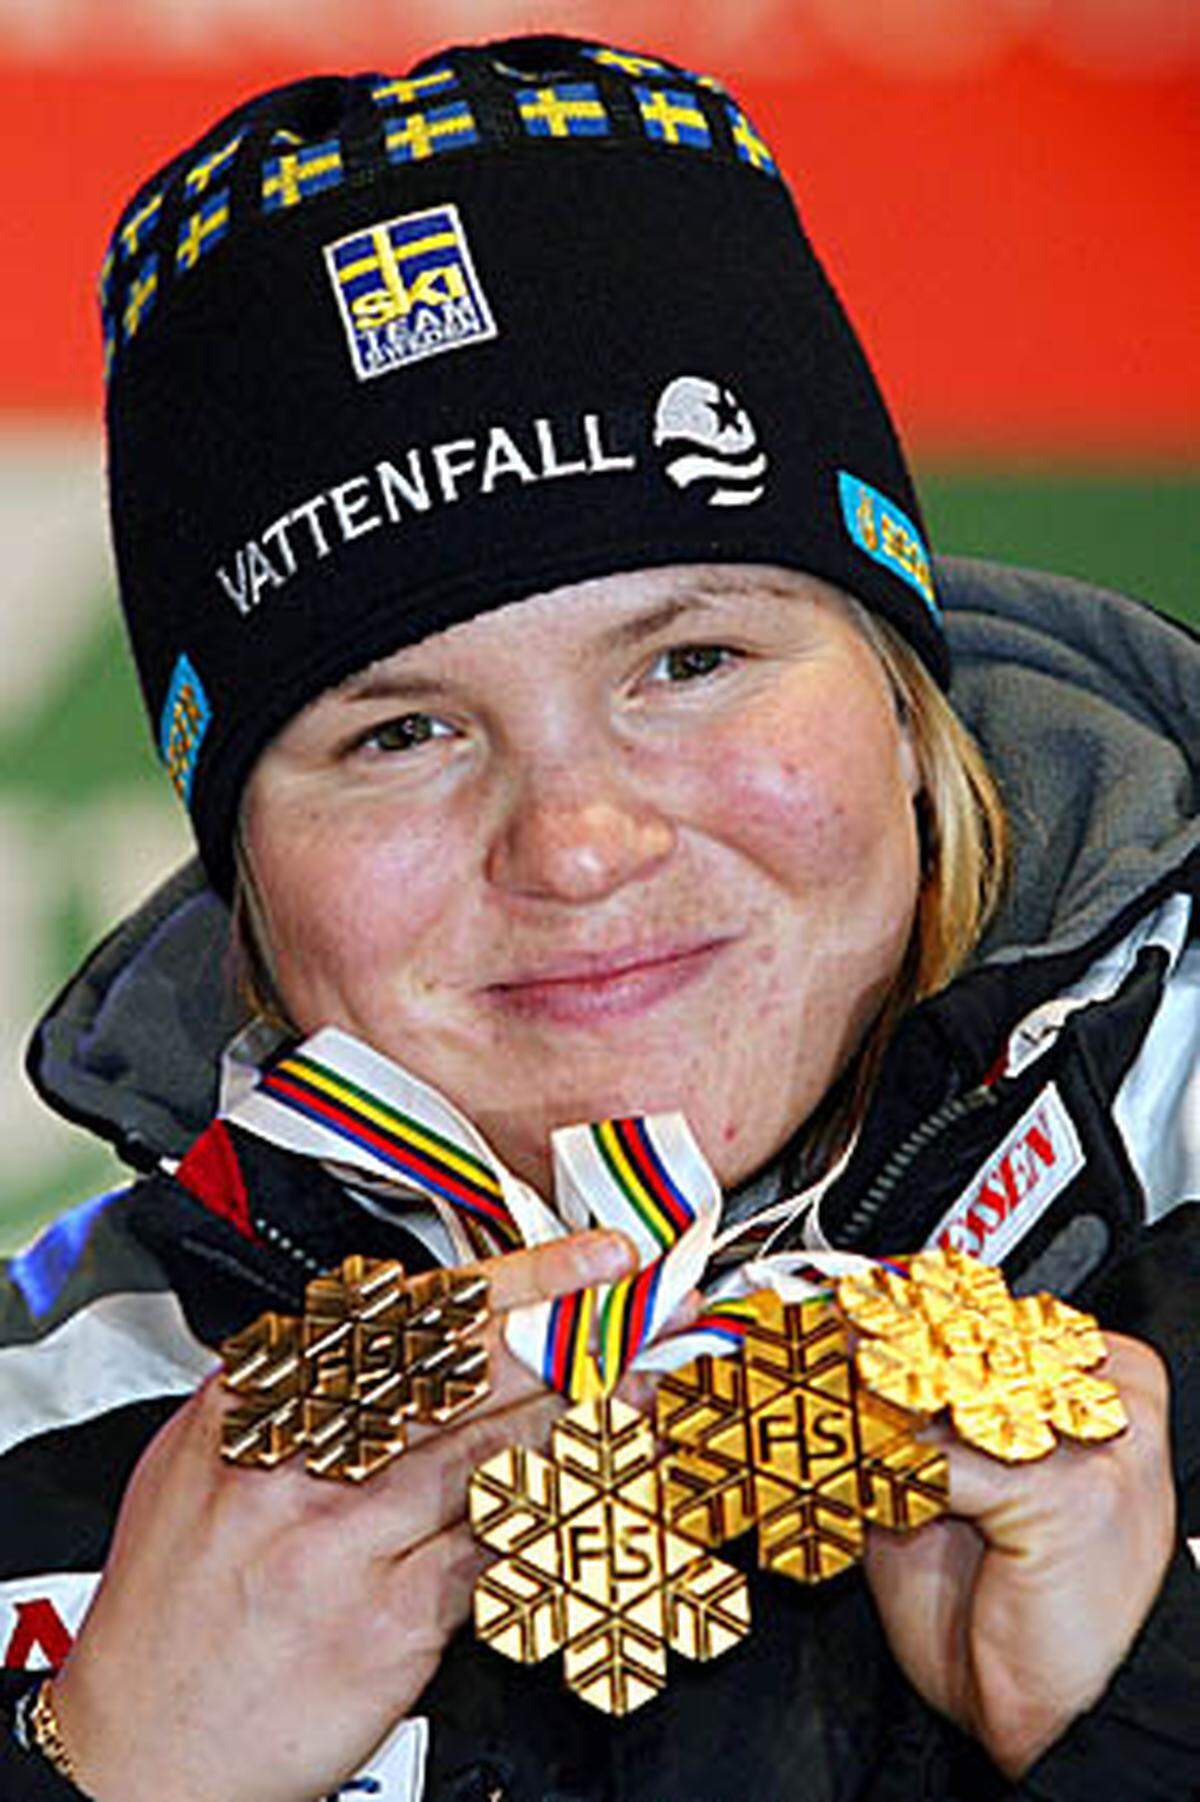 Die Schwedin hält bei sieben Gold-, zwei Silber- und vier Bronzemedaillen. Die Schwedin brillierte vor allem bei ihrer Heim-WM in Aare, wo sie dreimal Gold, einmal Silber und einmal Bronze holte. Pärson gewann als einzige Weltmeistertitel in allen fünf Disziplinen.